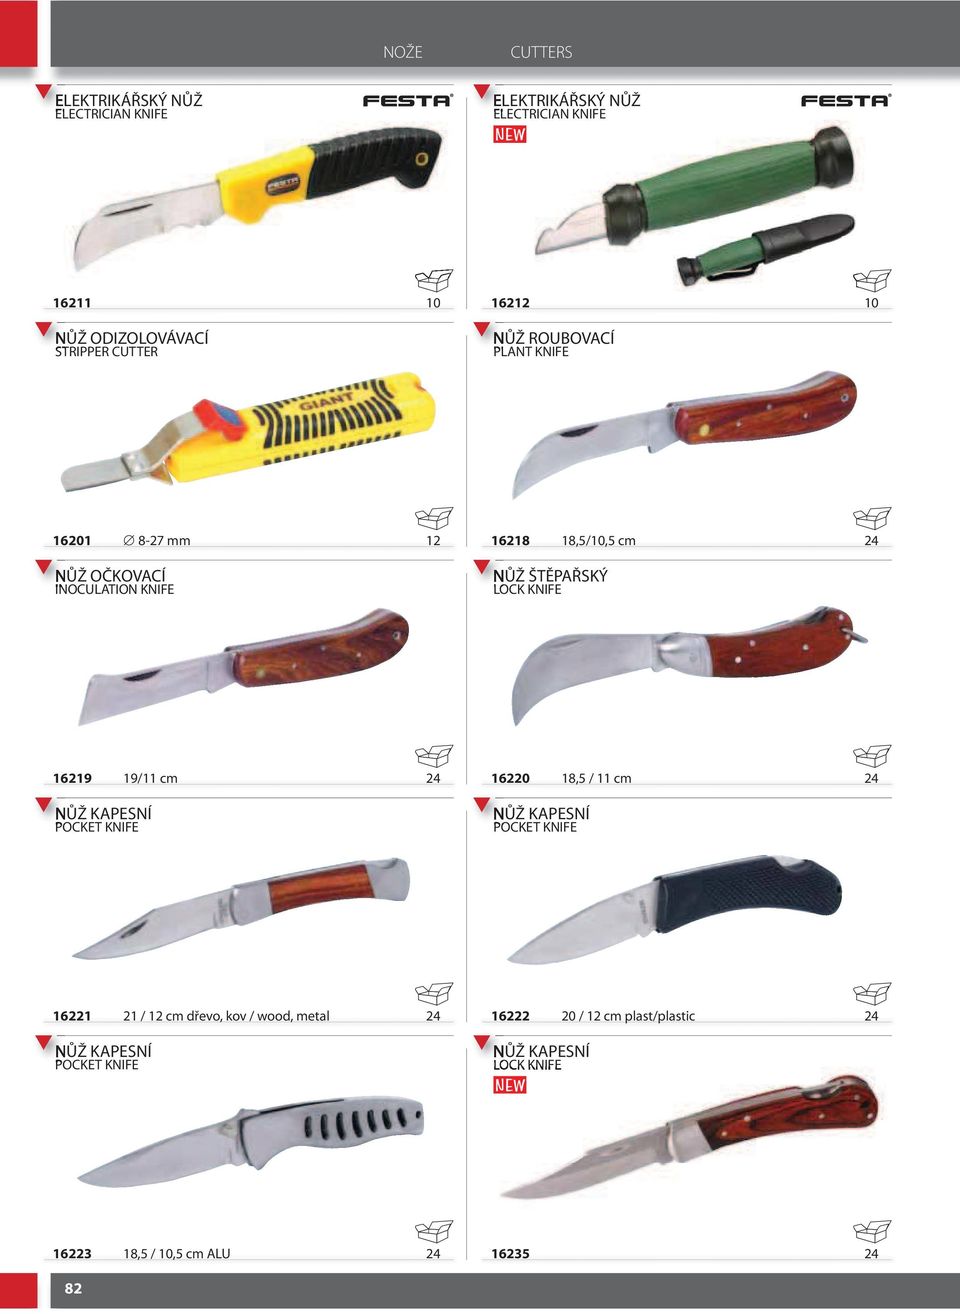 LOCK KNIFE 29 9/ cm NŮŽ KAPESNÍ POCKET KNIFE 2 8, / cm NŮŽ KAPESNÍ POCKET KNIFE 22 2 / 2 cm dřevo, kov